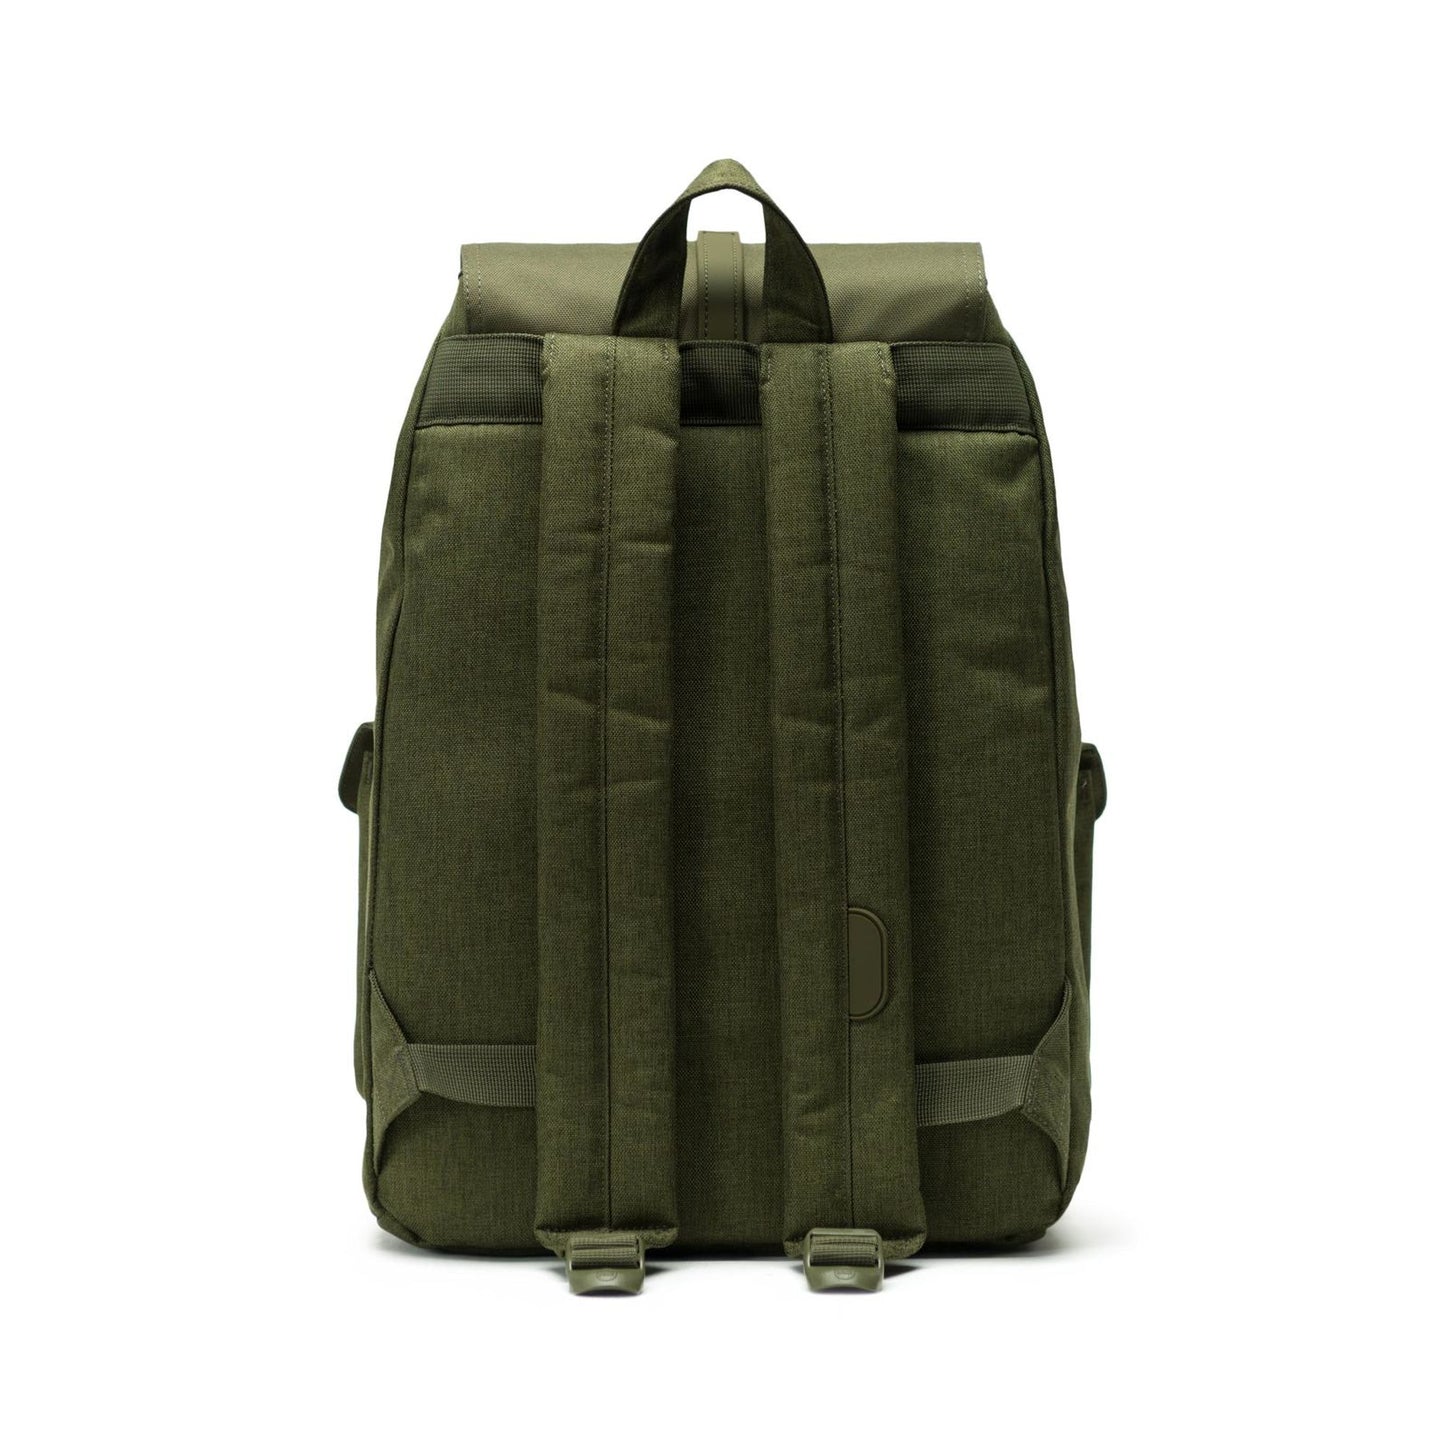 Herschel Supply Co. - Dawson Backpack, Olive Crosshatch